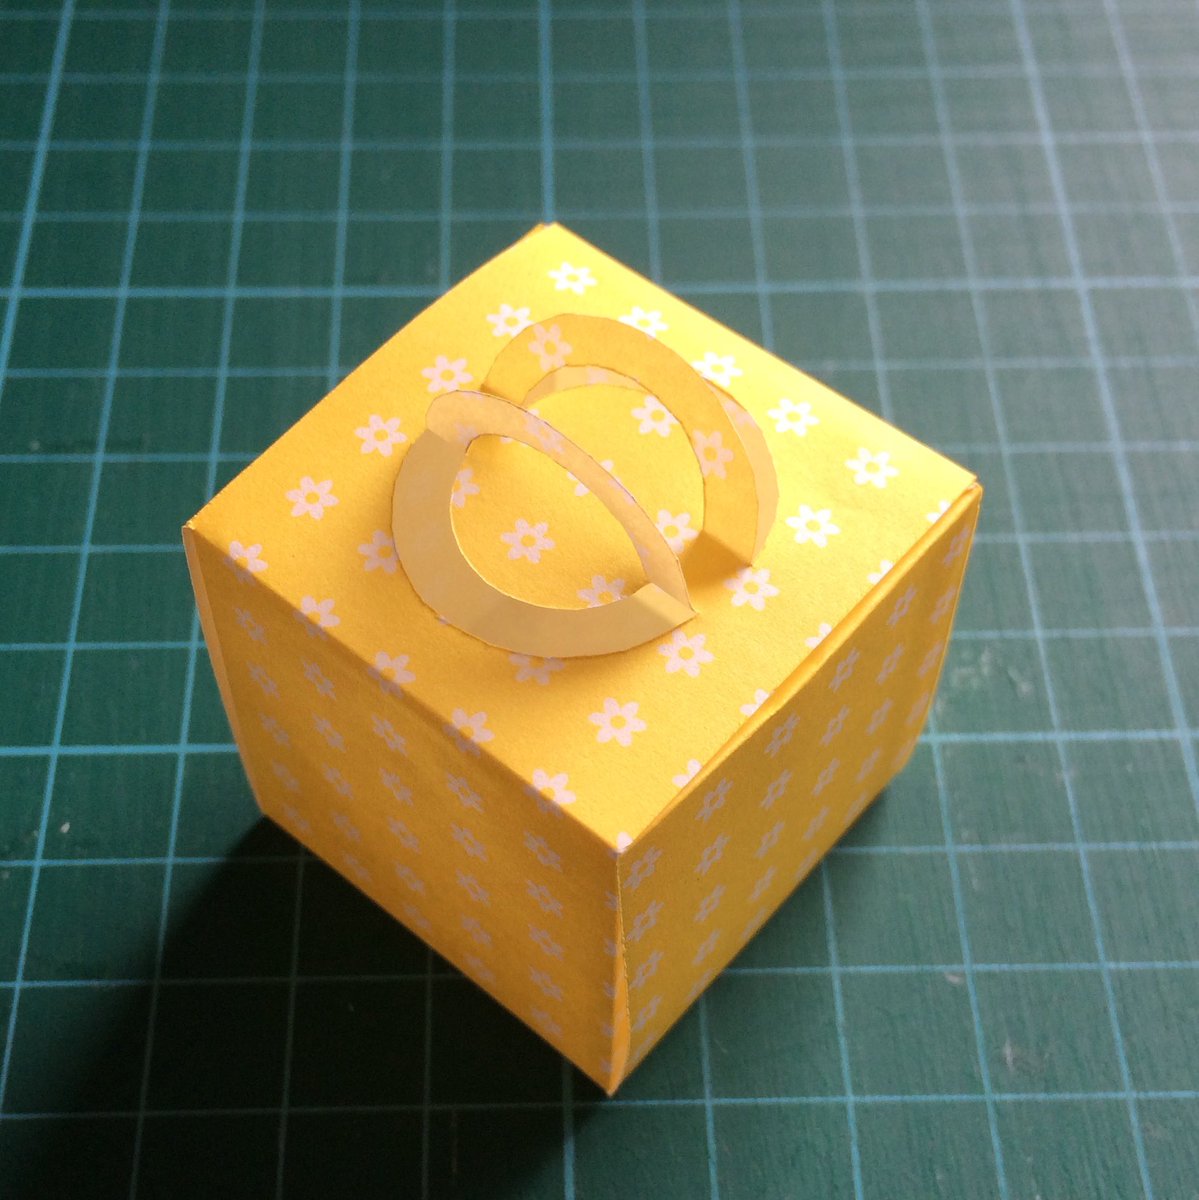 辻本京子 Kokko 粘土工房 Kokko Garden 折り紙1枚でミニチュアのケーキボックスができた なんで今まで気がつかなかったんだろう 糊付けは1ヶ所だけだし 簡単で可愛い 折り紙 セリア ミニチュア ケーキボックス